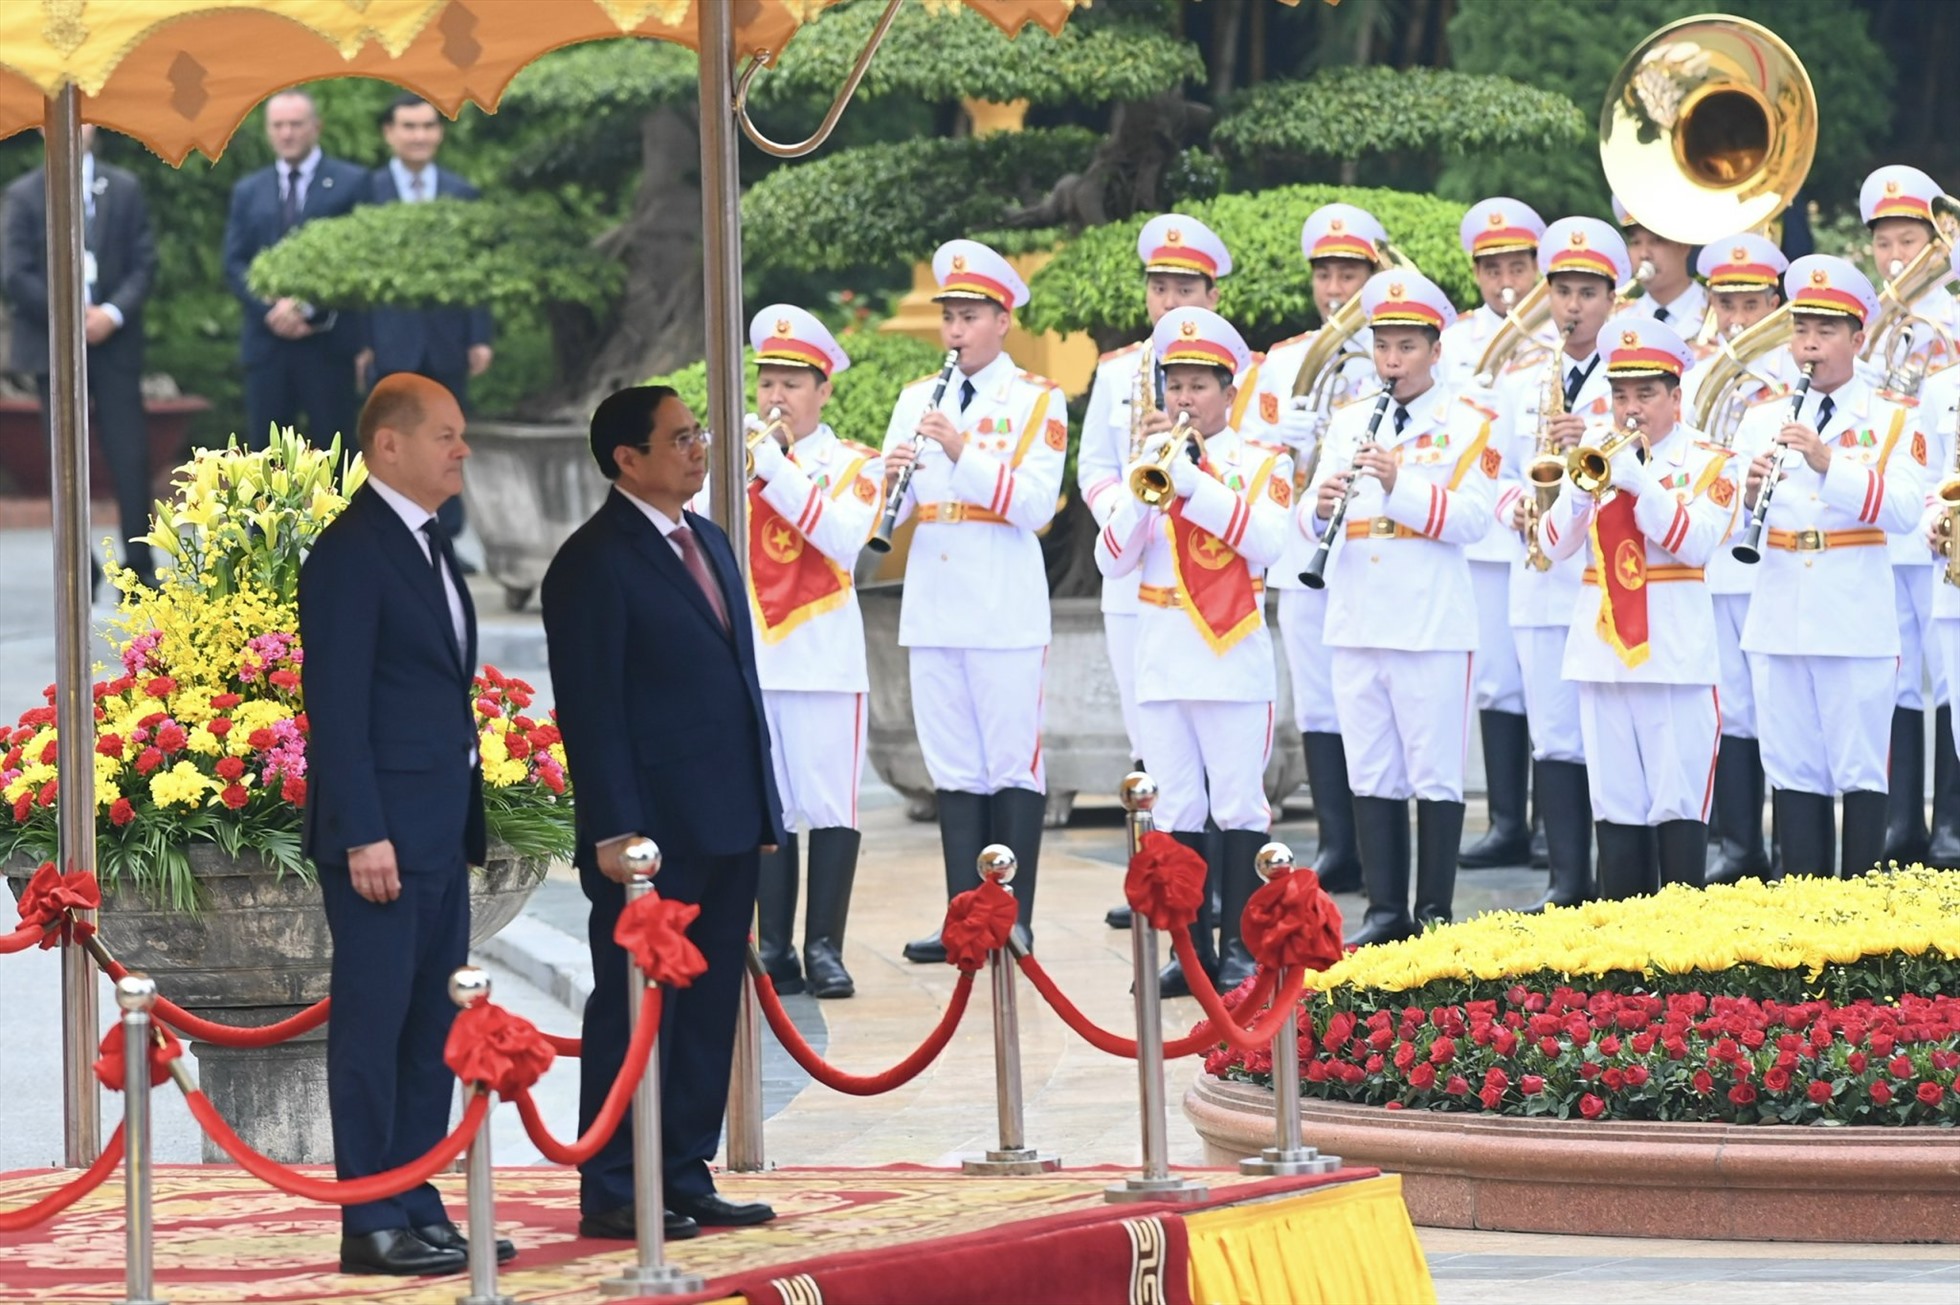 Chuyến thăm Việt Nam của Thủ tướng Đức diễn ra trong bối cảnh quan hệ hữu nghị và hợp tác giữa hai nước phát triển tích cực, ngày càng sâu rộng, hiệu quả và toàn diện. Ảnh: Hải Nguyễn